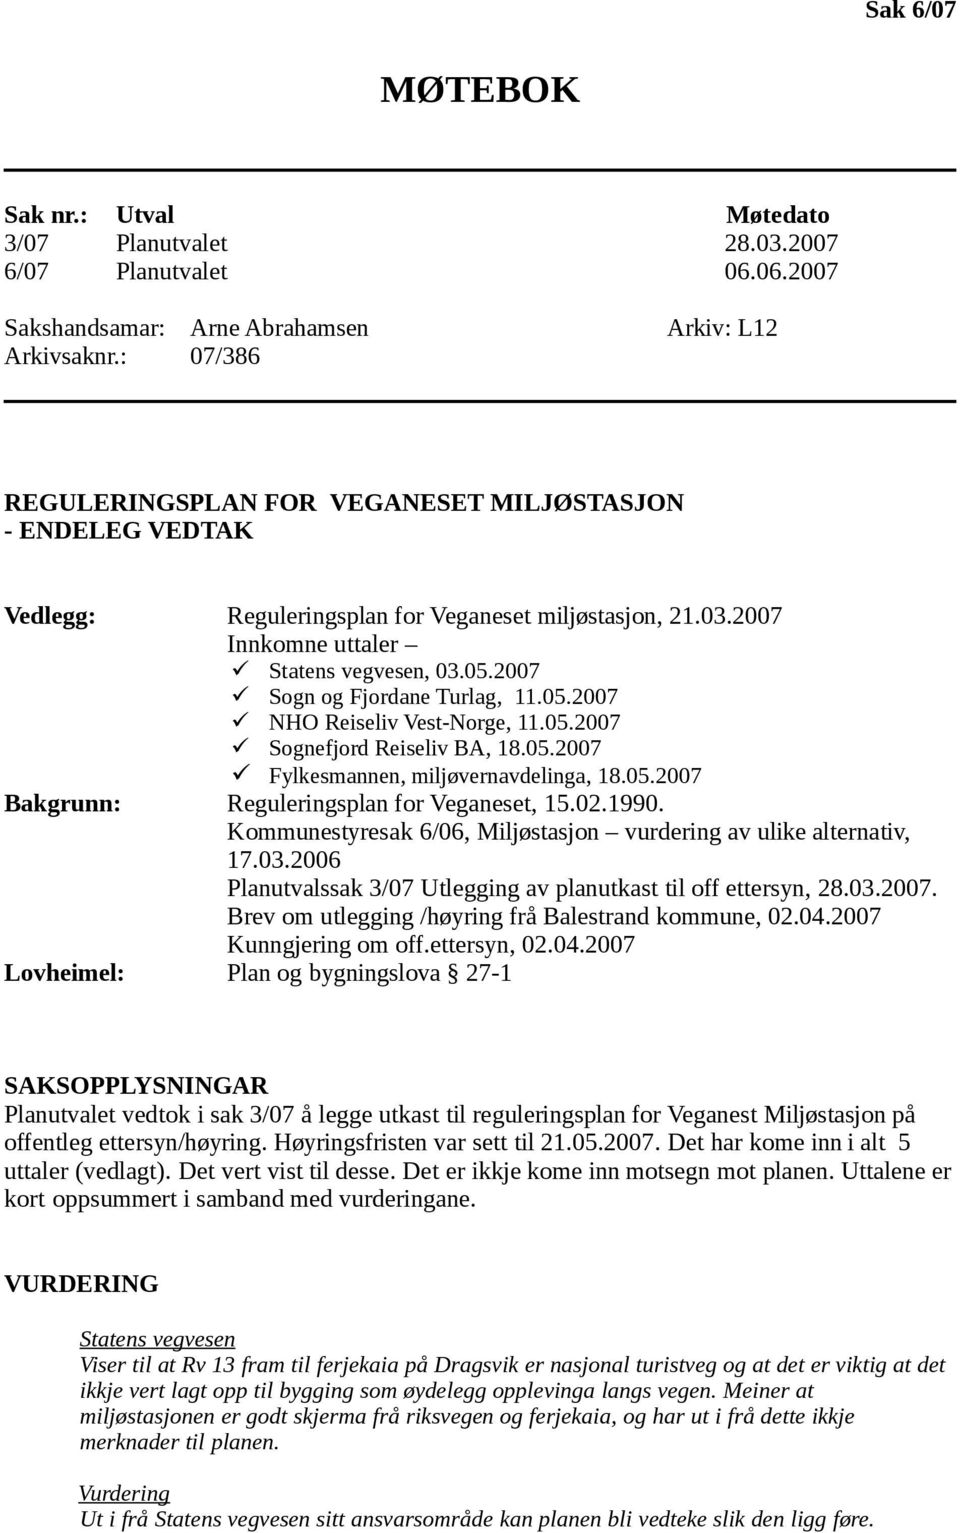 2007 Sogn og Fjordane Turlag, 11.05.2007 NHO Reiseliv Vest-Norge, 11.05.2007 Sognefjord Reiseliv BA, 18.05.2007 Fylkesmannen, miljøvernavdelinga, 18.05.2007 Bakgrunn: Reguleringsplan for Veganeset, 15.